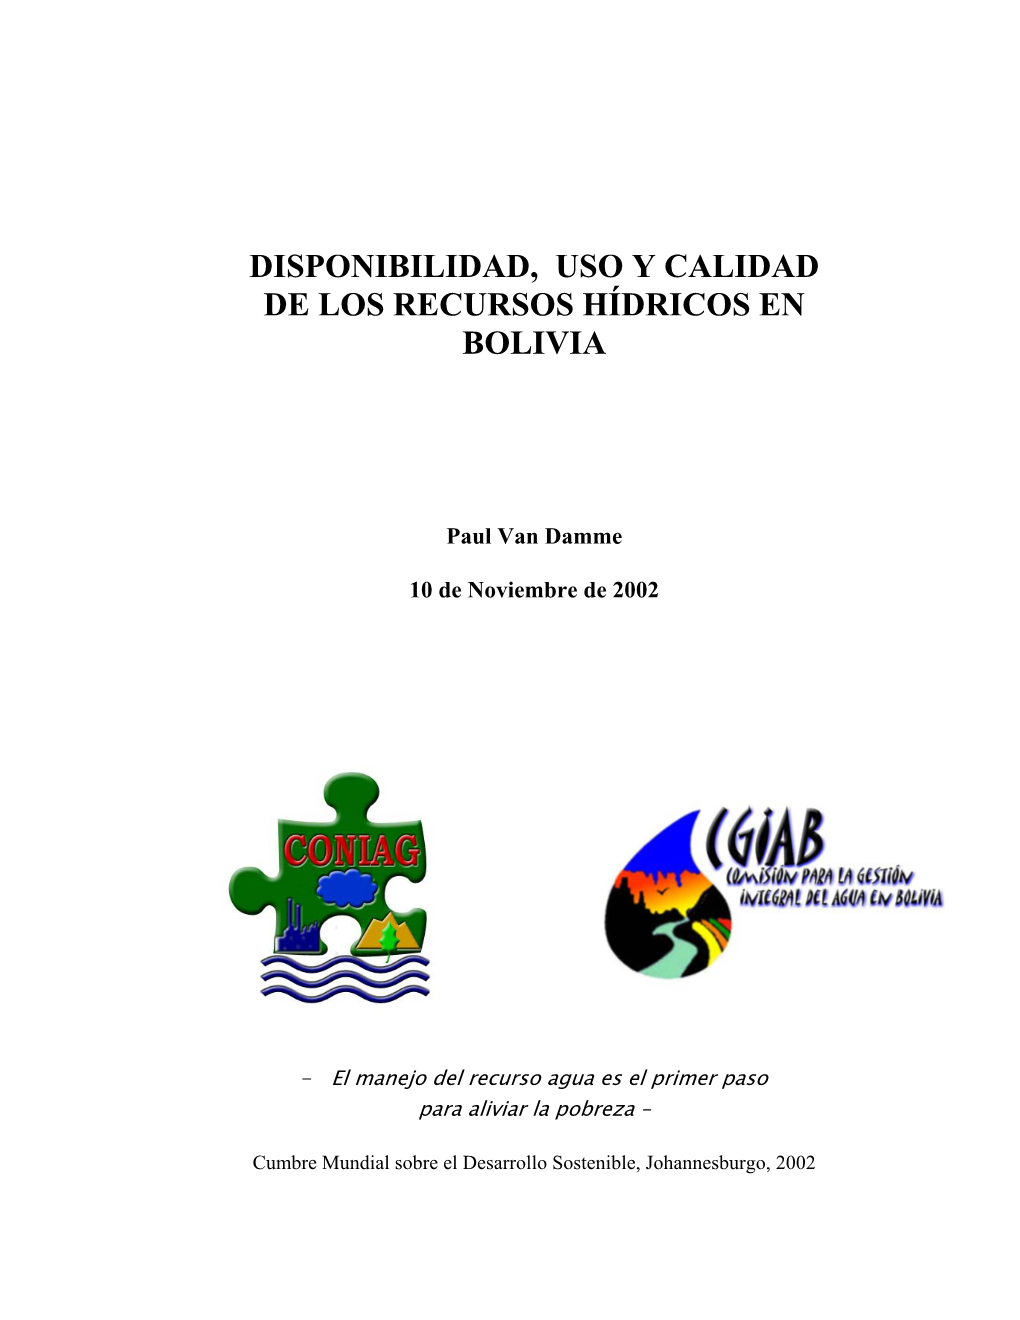 Disponibilidad, Uso Y Calidad De Los Recursos Hídricos En Bolivia